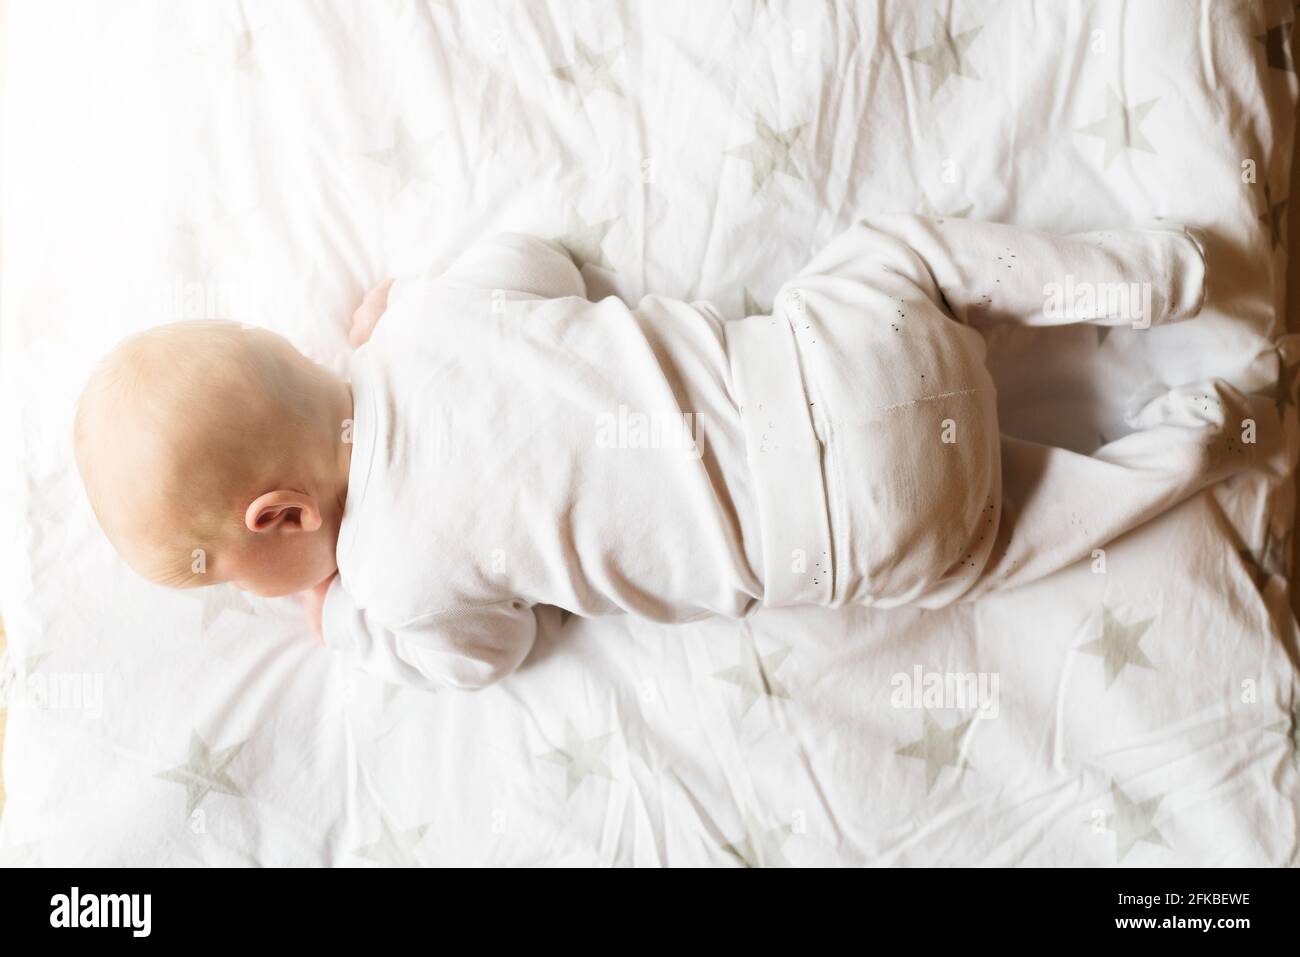 Direkt über der Ansicht eines einmonatigen Babys auf der Decke Versuchen, seinen Kopf zu heben Stockfoto